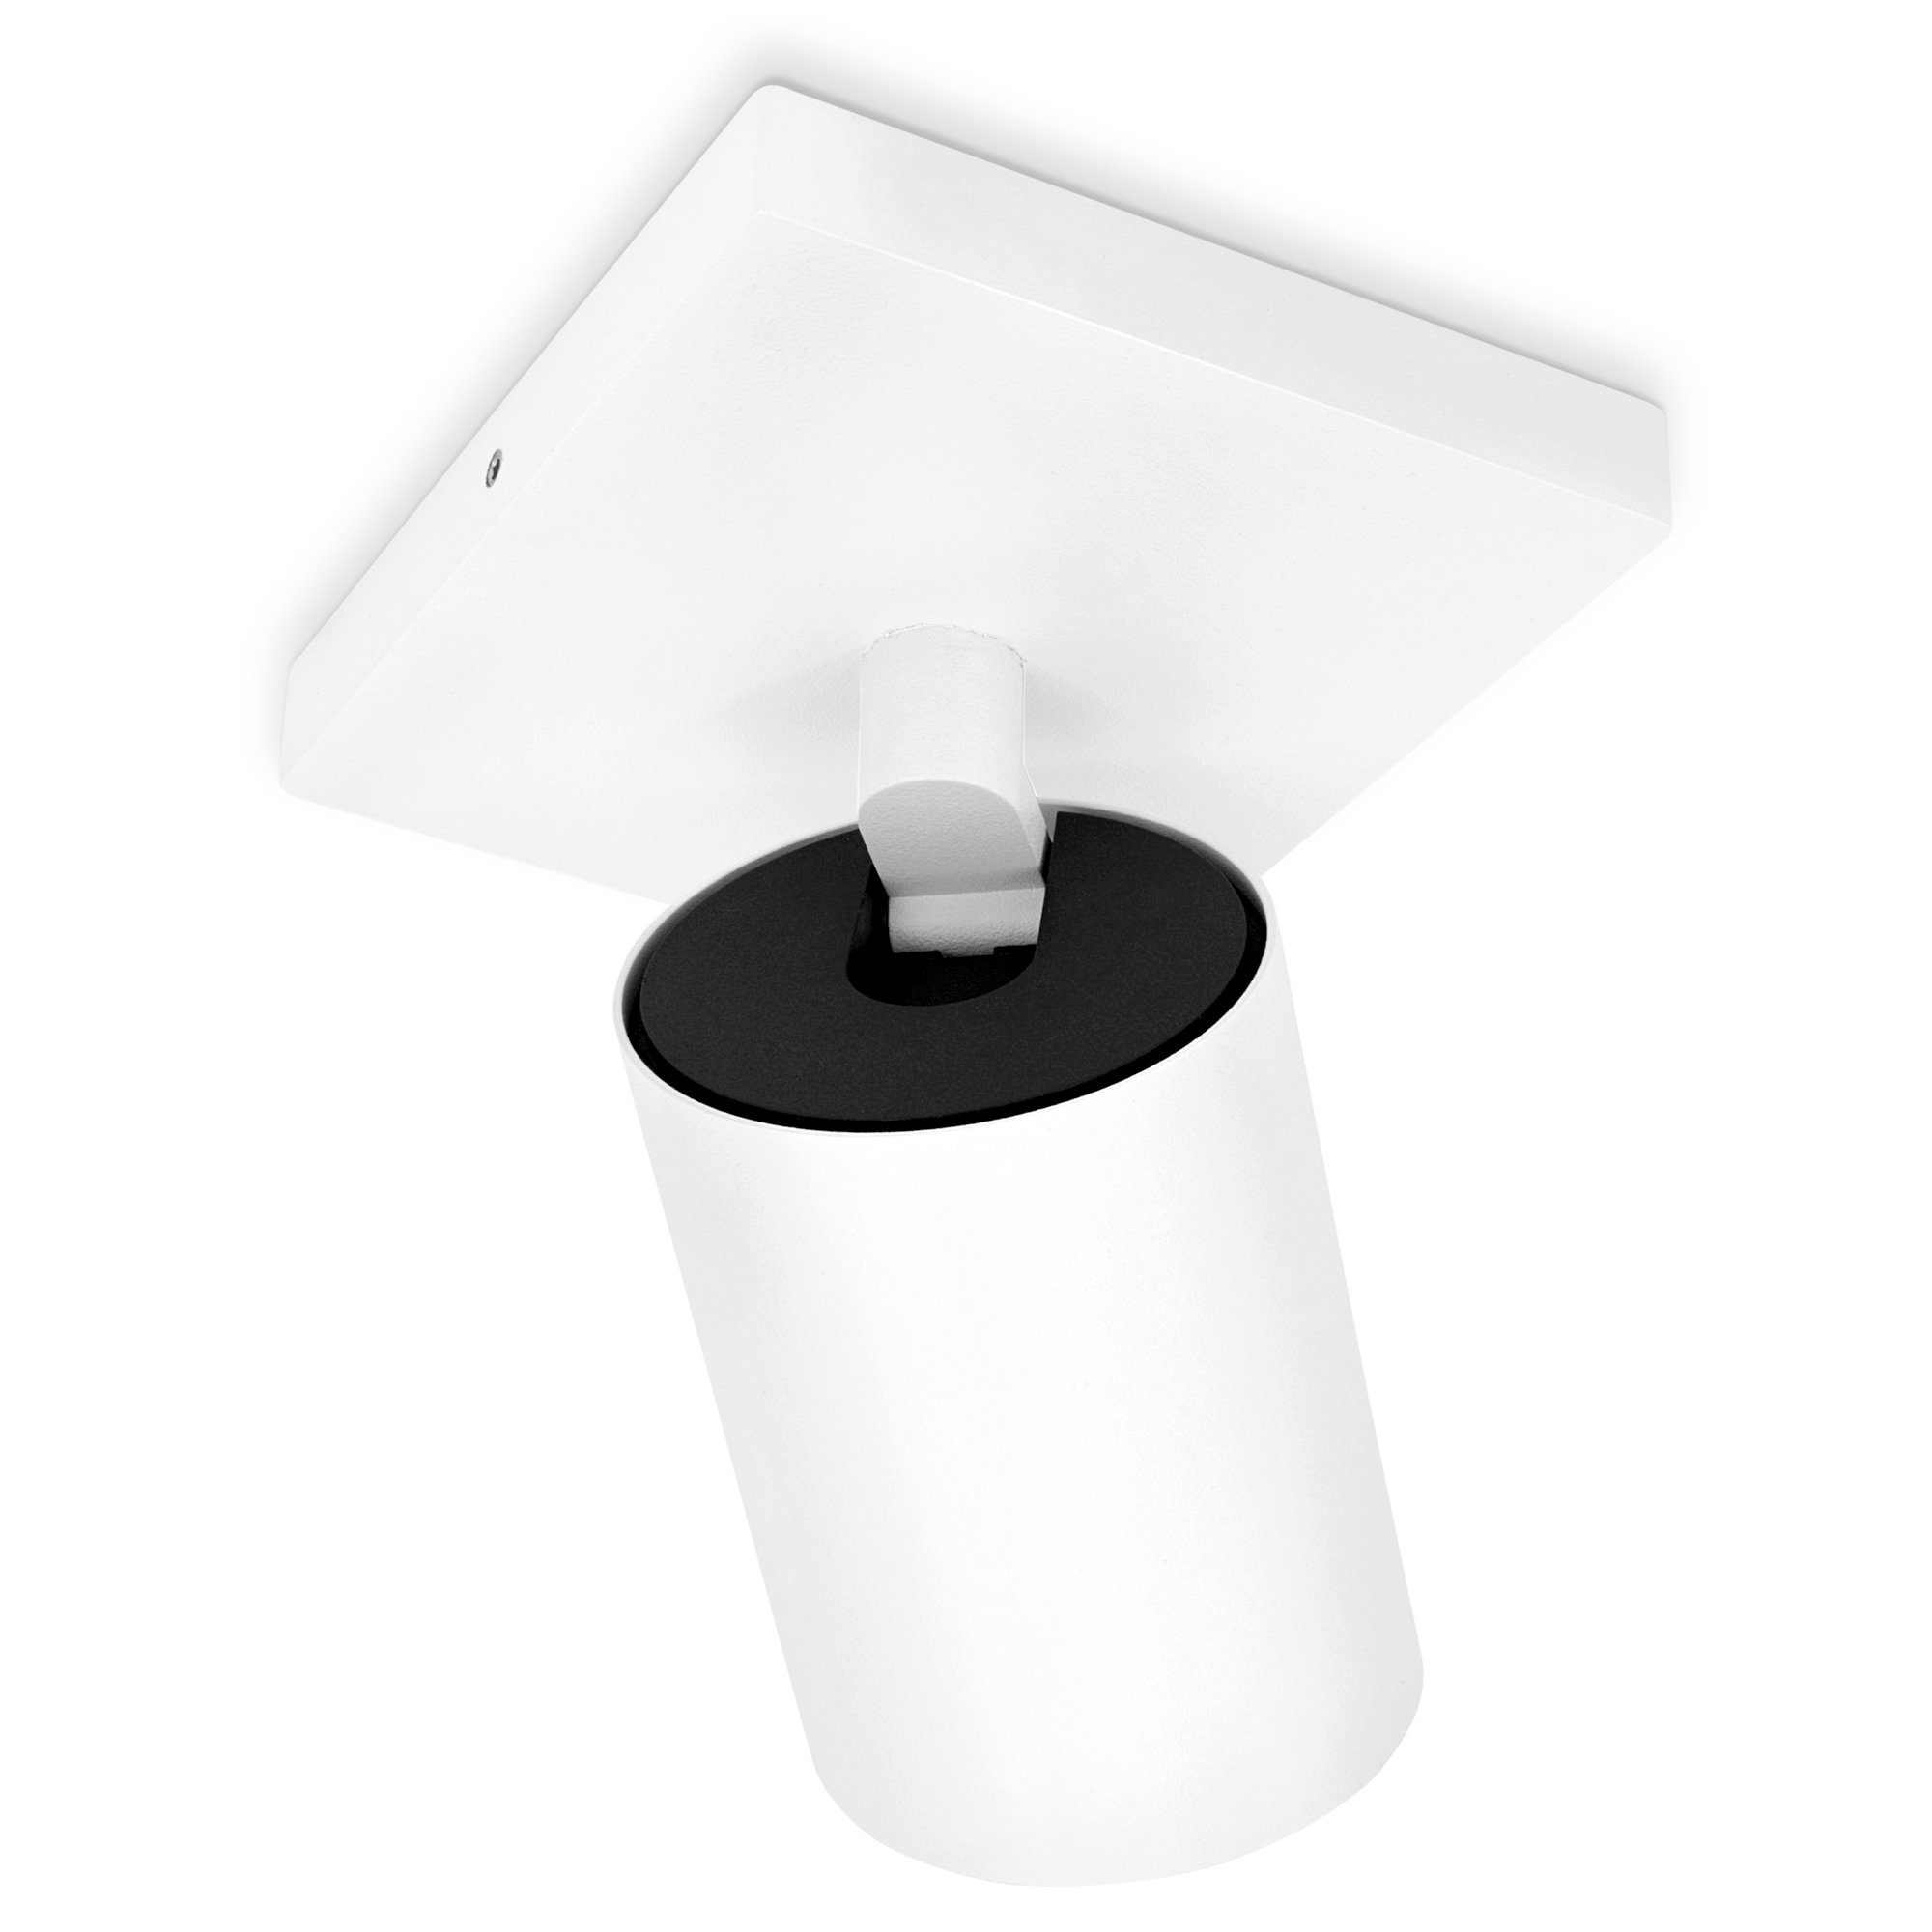 SSC-LUXon Aufbauleuchte ALVO Lampe, 1-flammig Design schwenkbar LED RGB RGB Spotstrahler WiFi mit